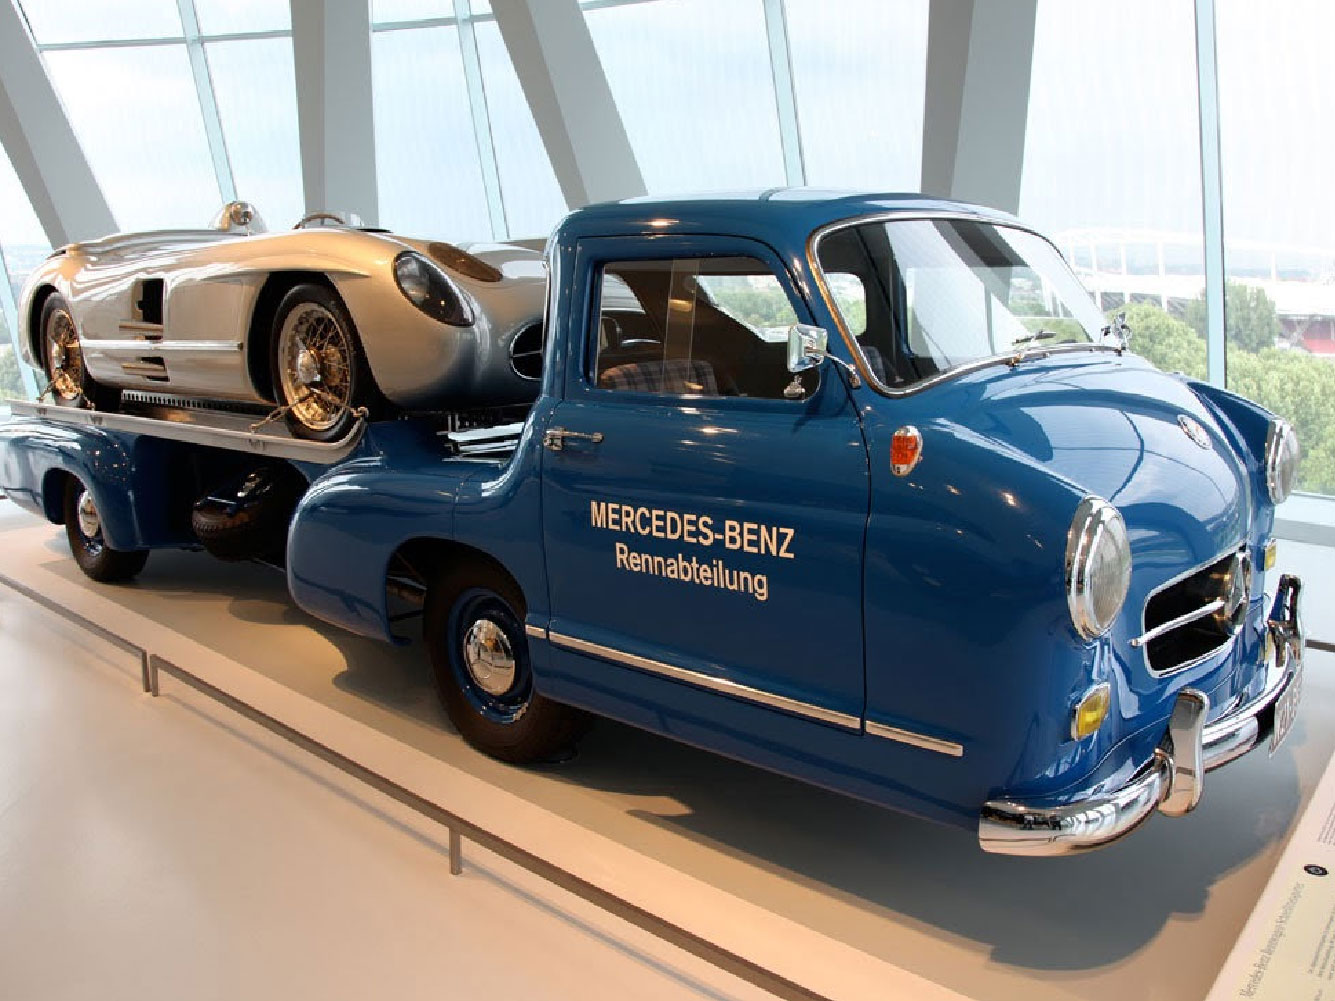 Thang máy độc nhất vô nhị tại bảo tàng Mercedes-Benz